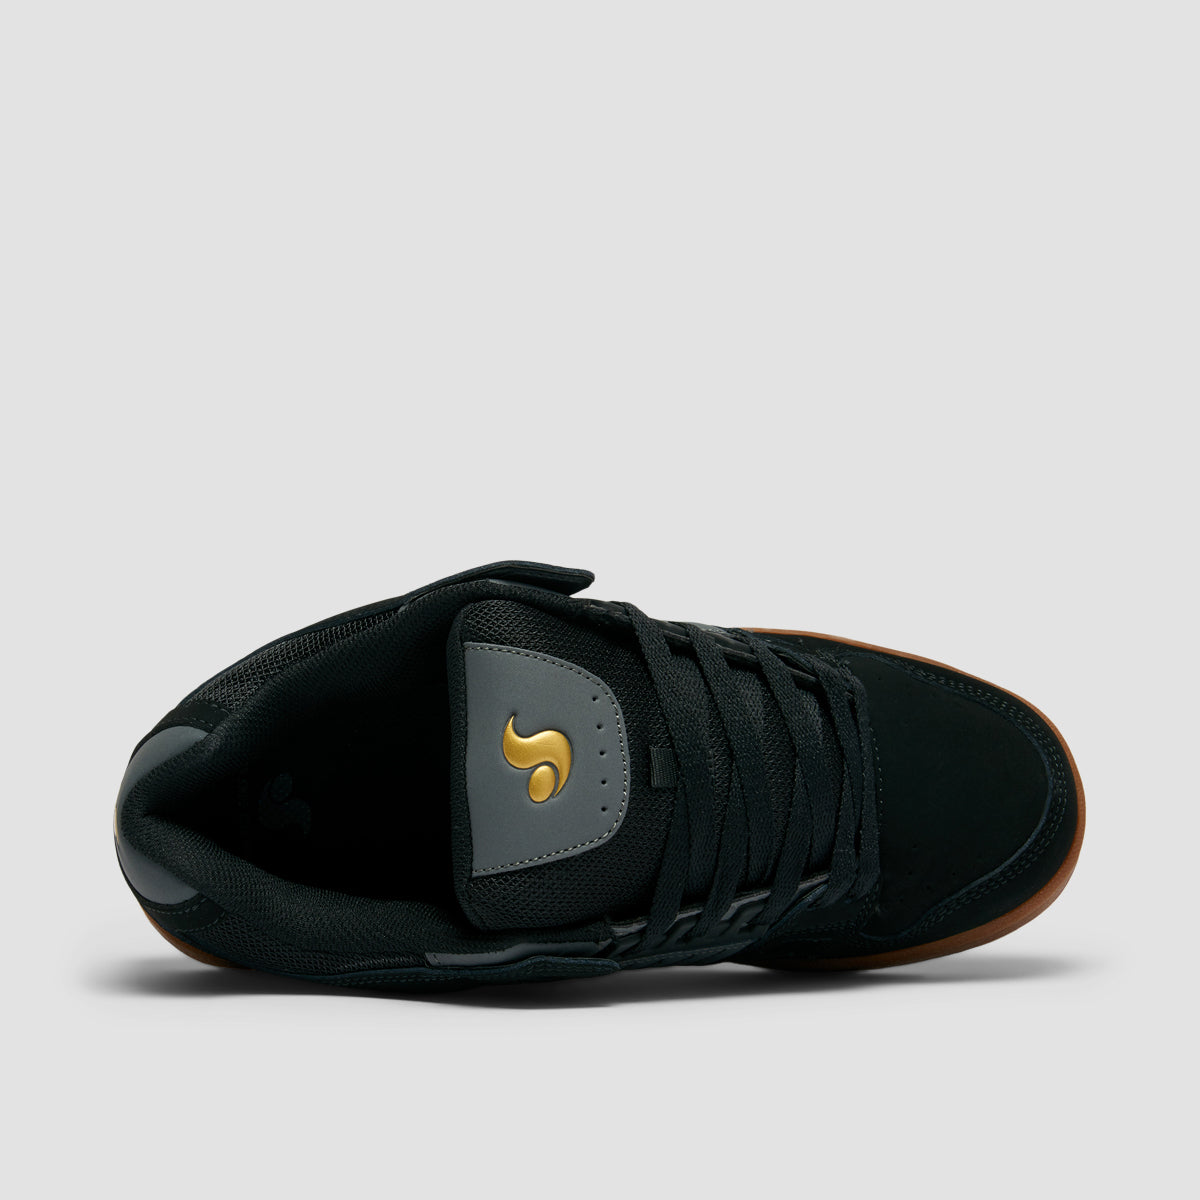 DVS Celsius Shoes - Black/Charcoal/Gum Nubuck